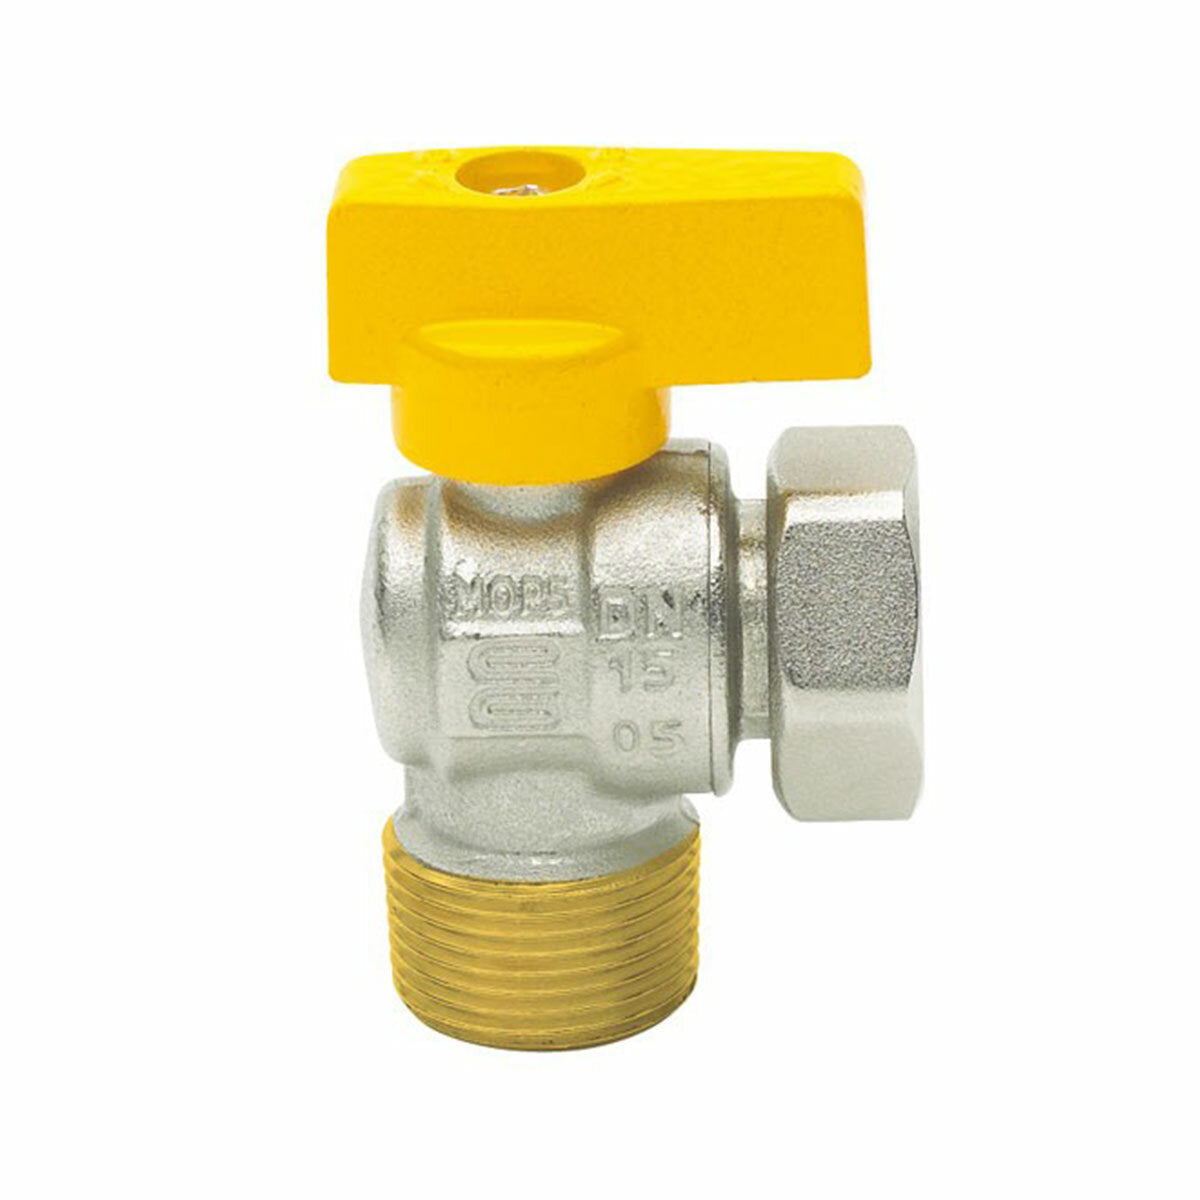 Enolgas Bon Gas ball valve for boiler combustible gas 3/4" x 3/4"